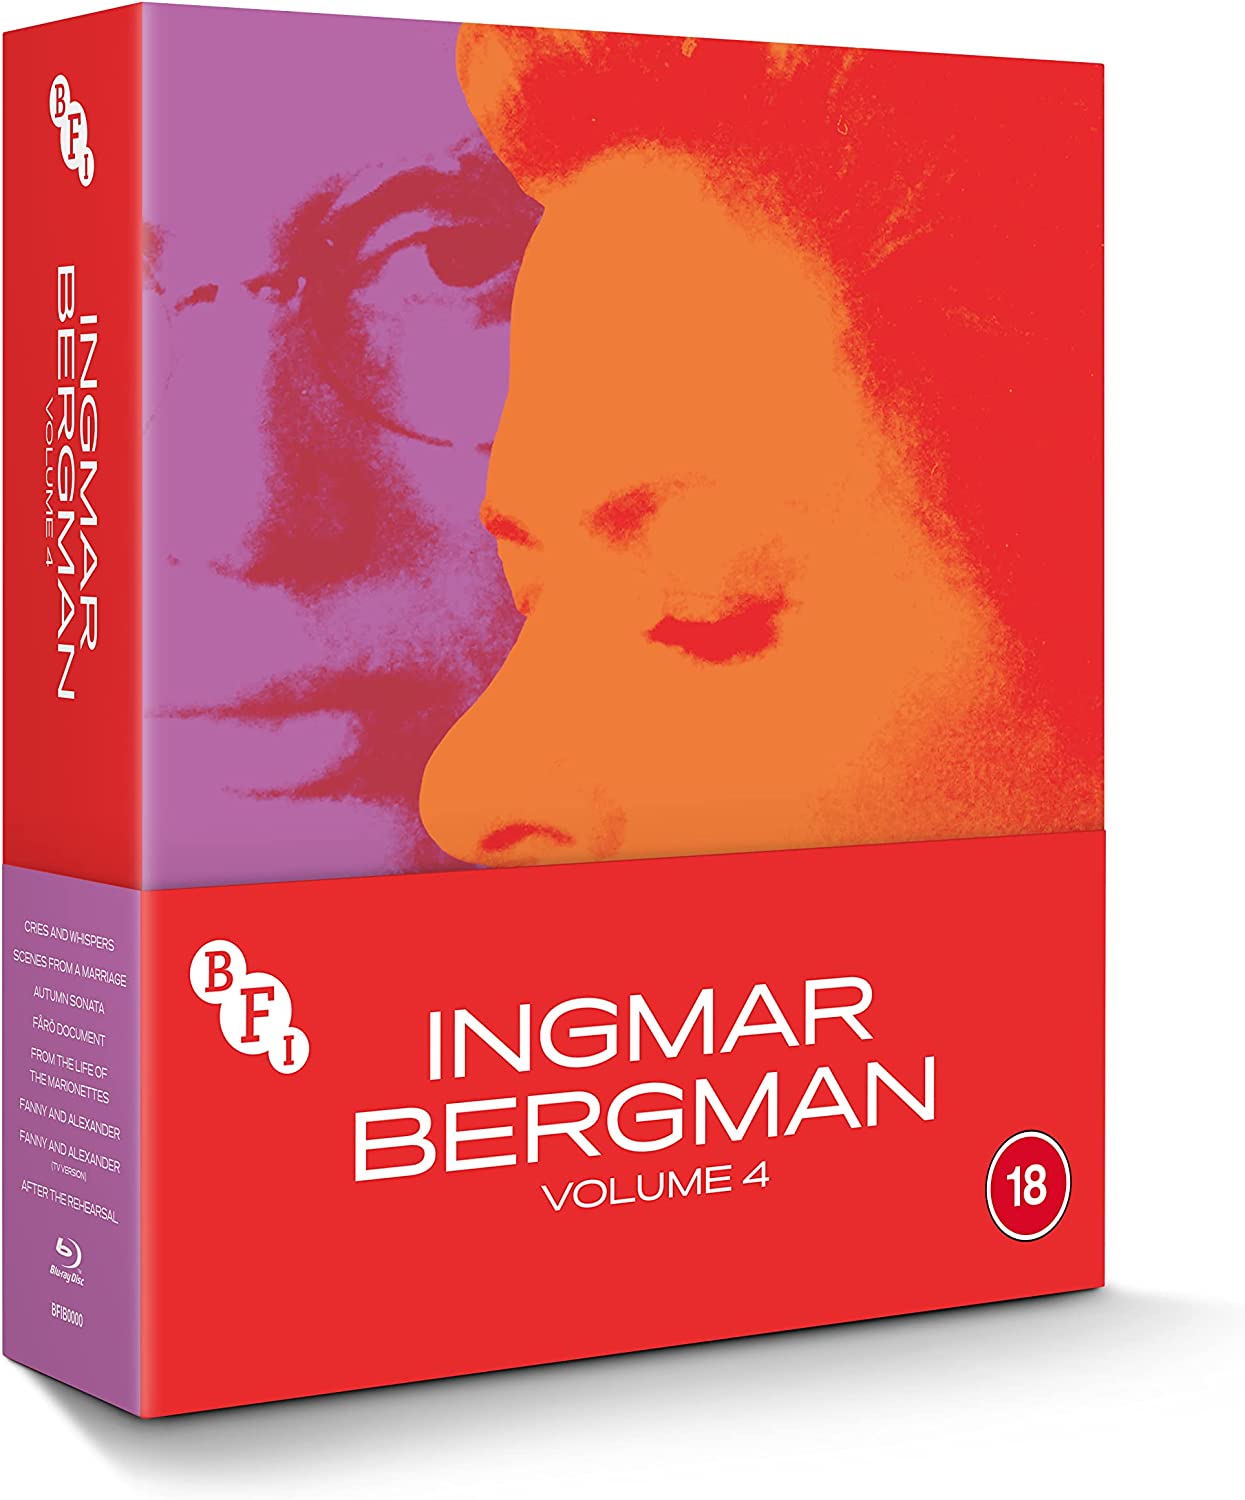 Ingmar Bergman DVD cover